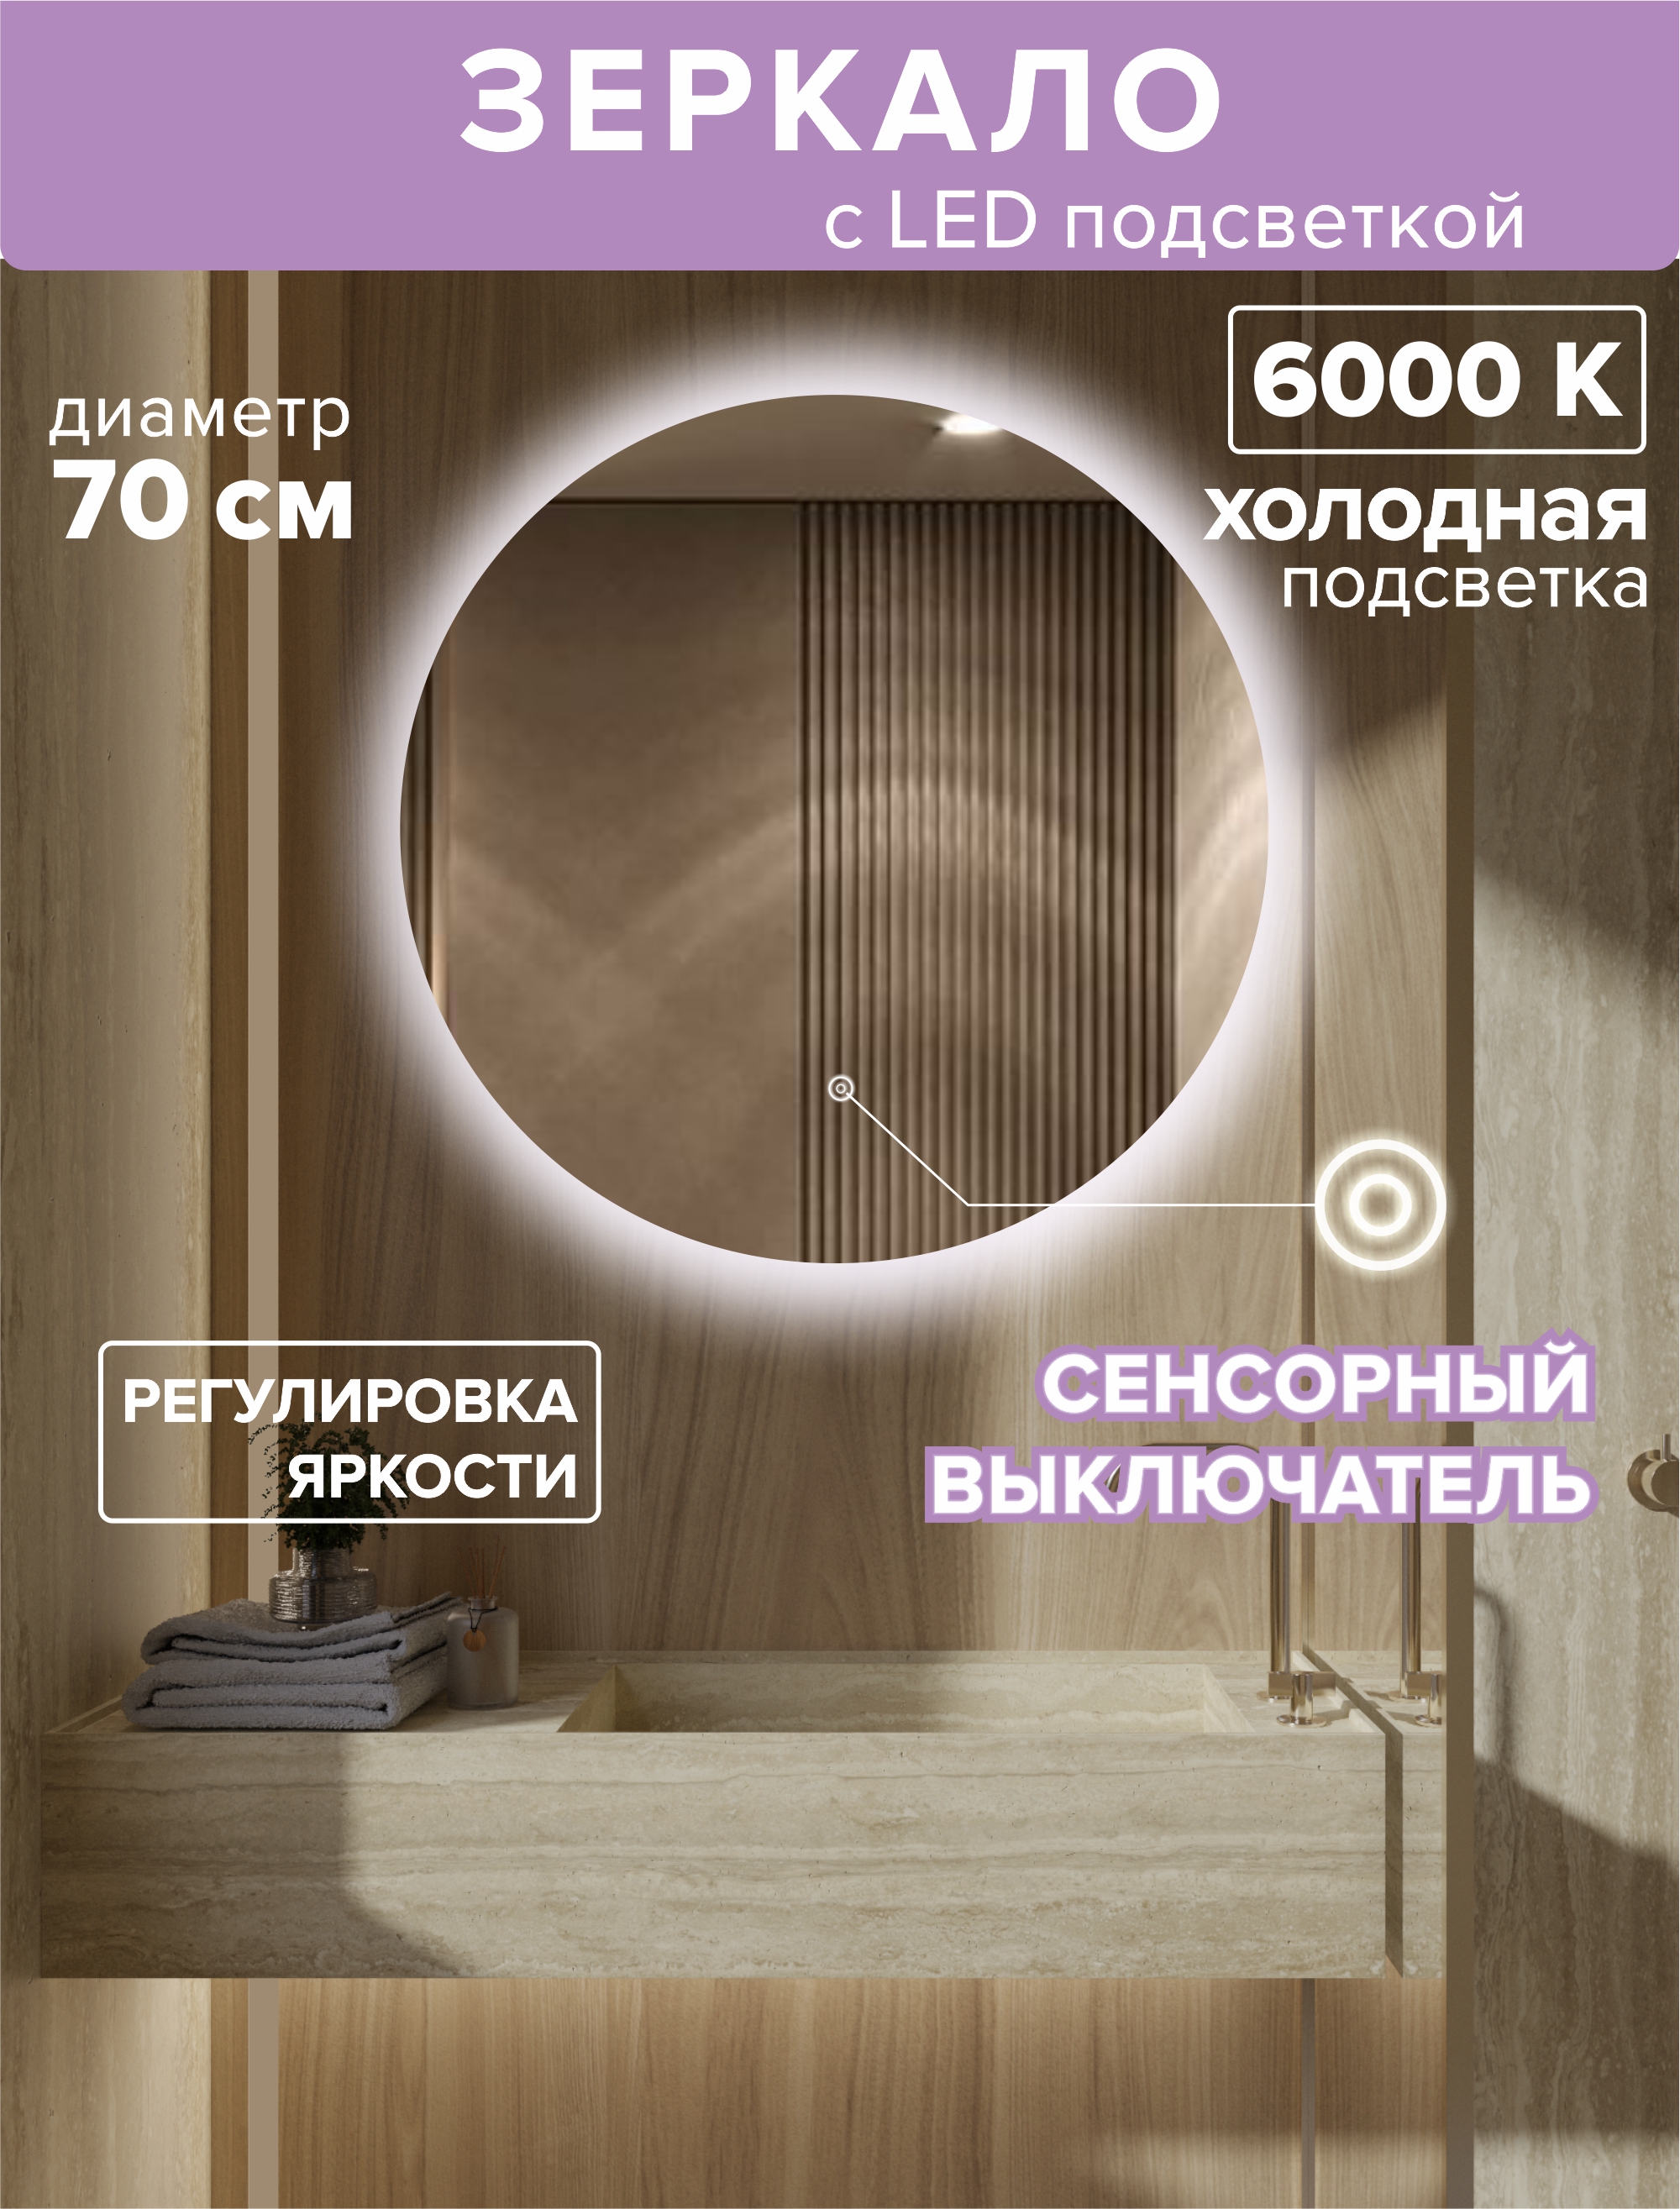 Зеркало с подсветкой круглое 70см. Подсветка холодная (6500К) подсветка для зеркал lussole selvino lsa 7701 01